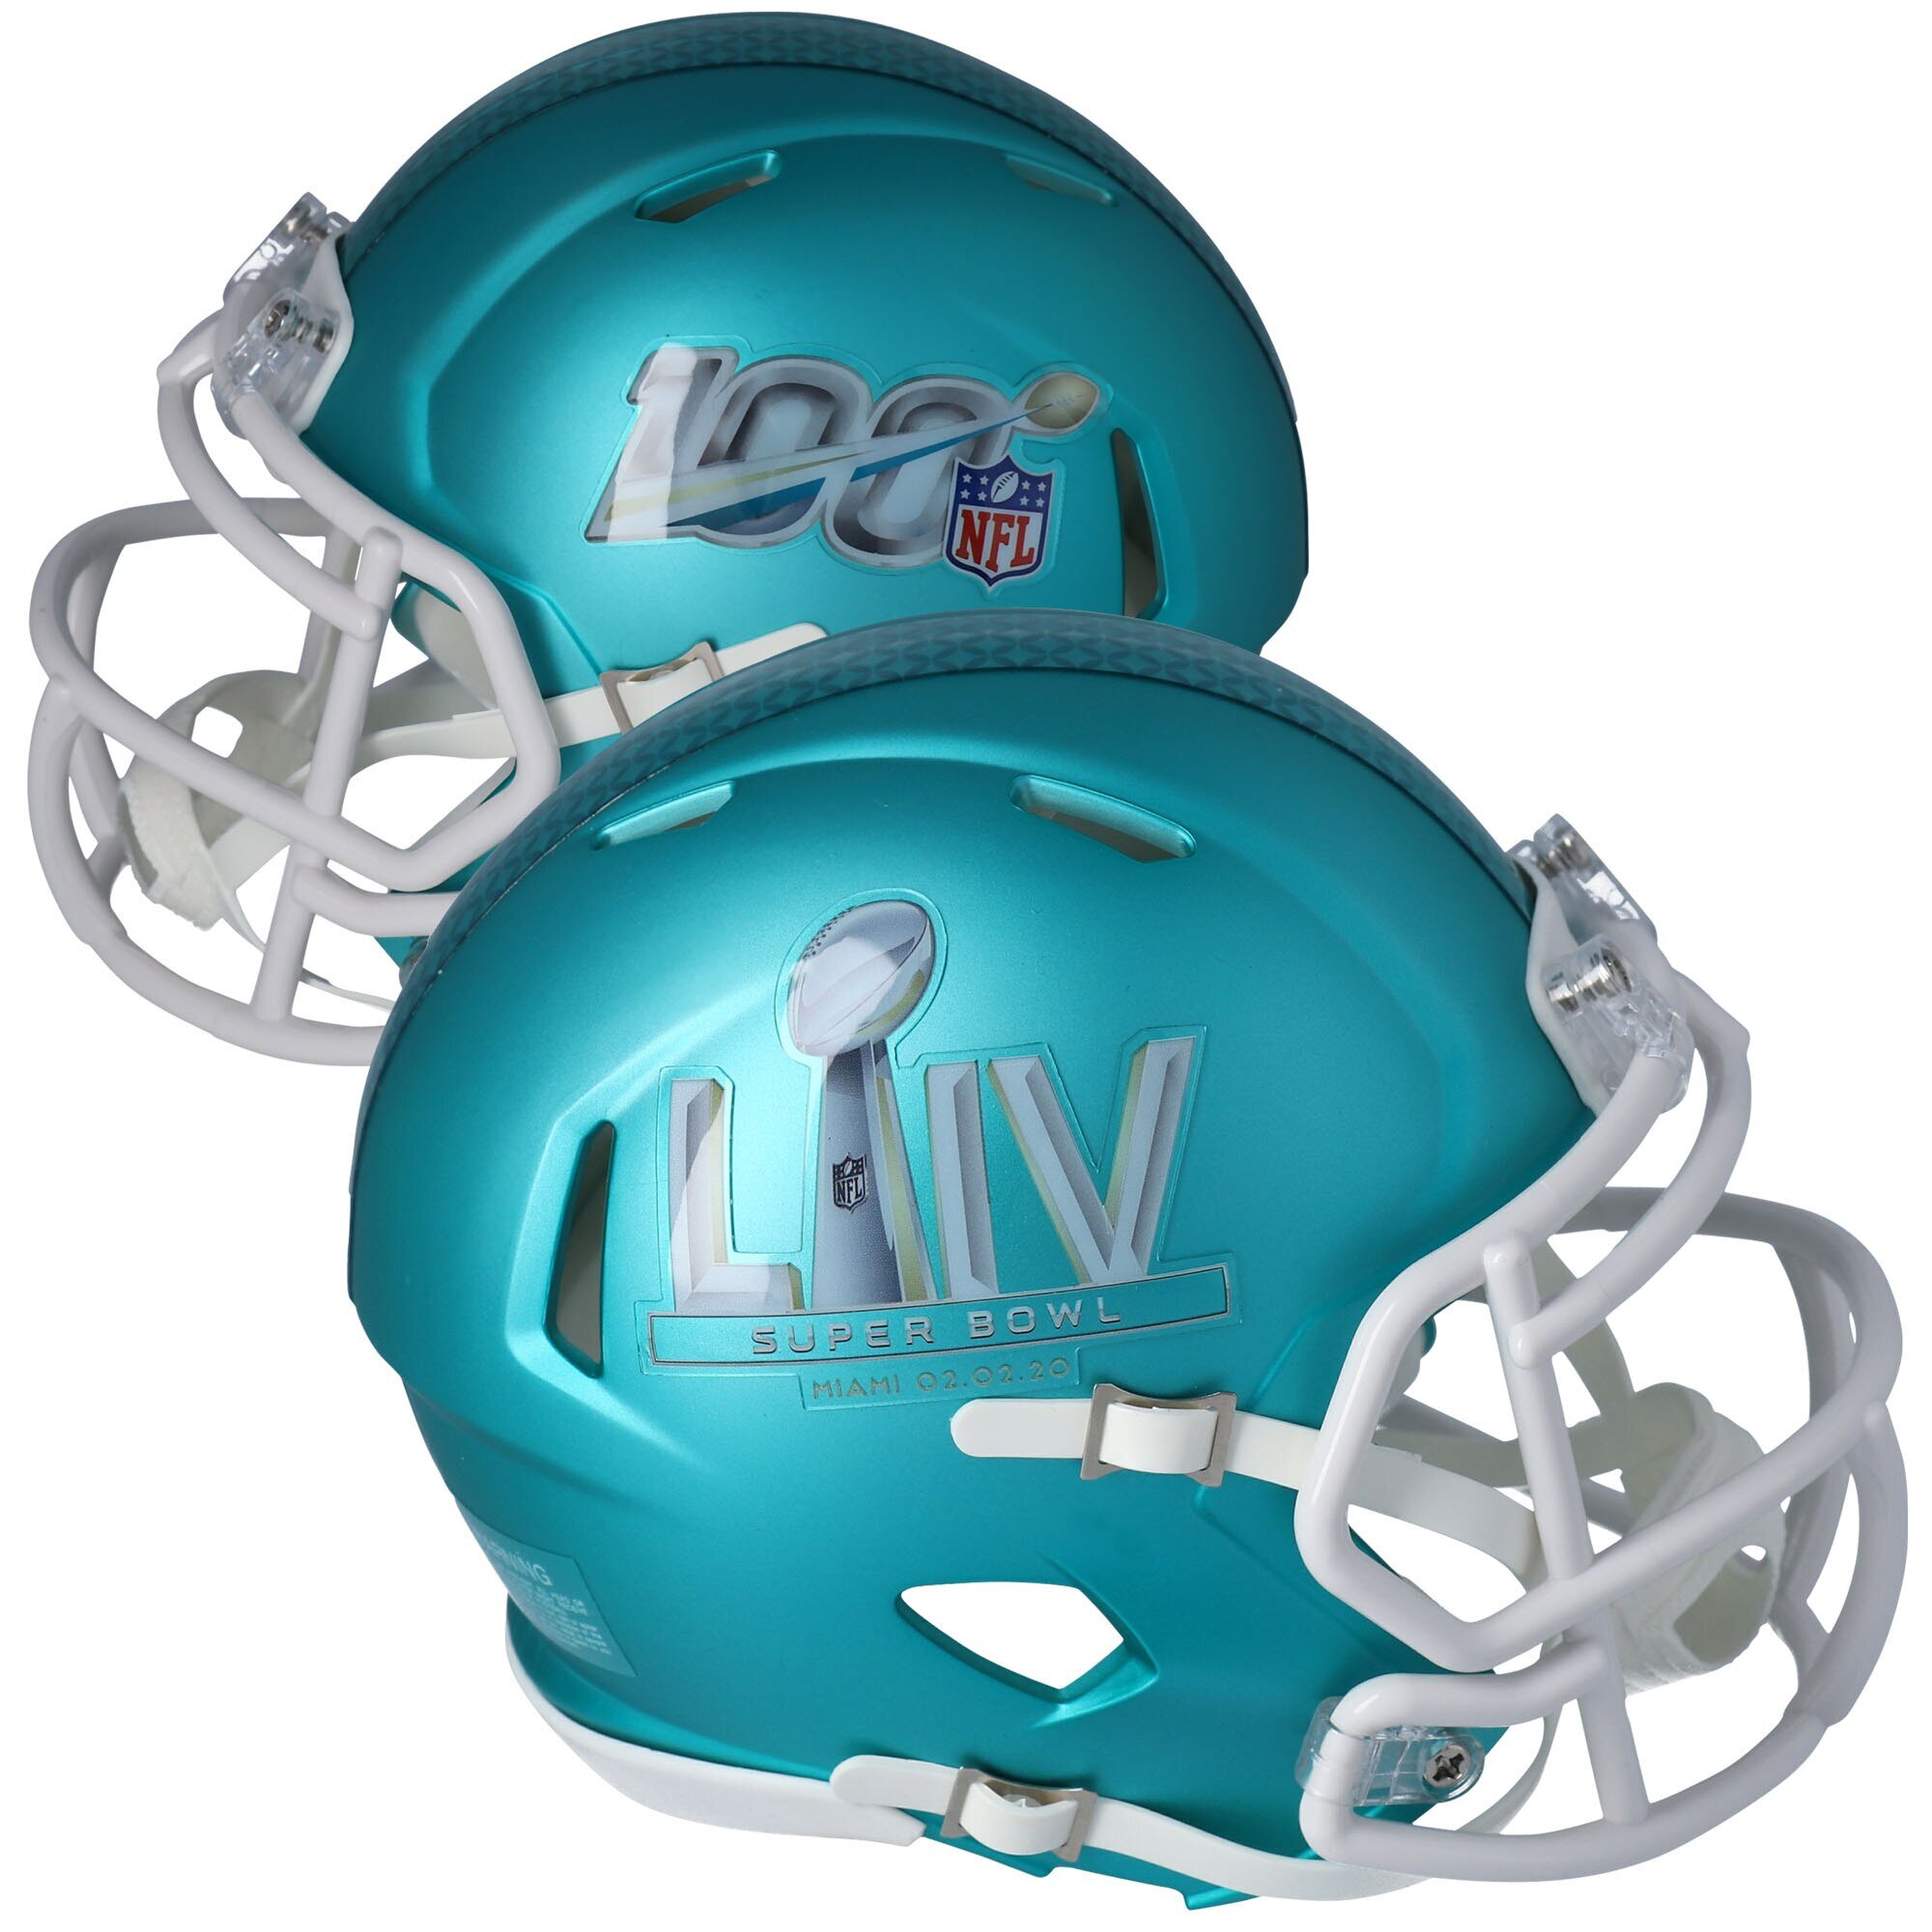 New Riddell Super Bowl LIV 54 Speed Mini Football Helmet Miami 2020